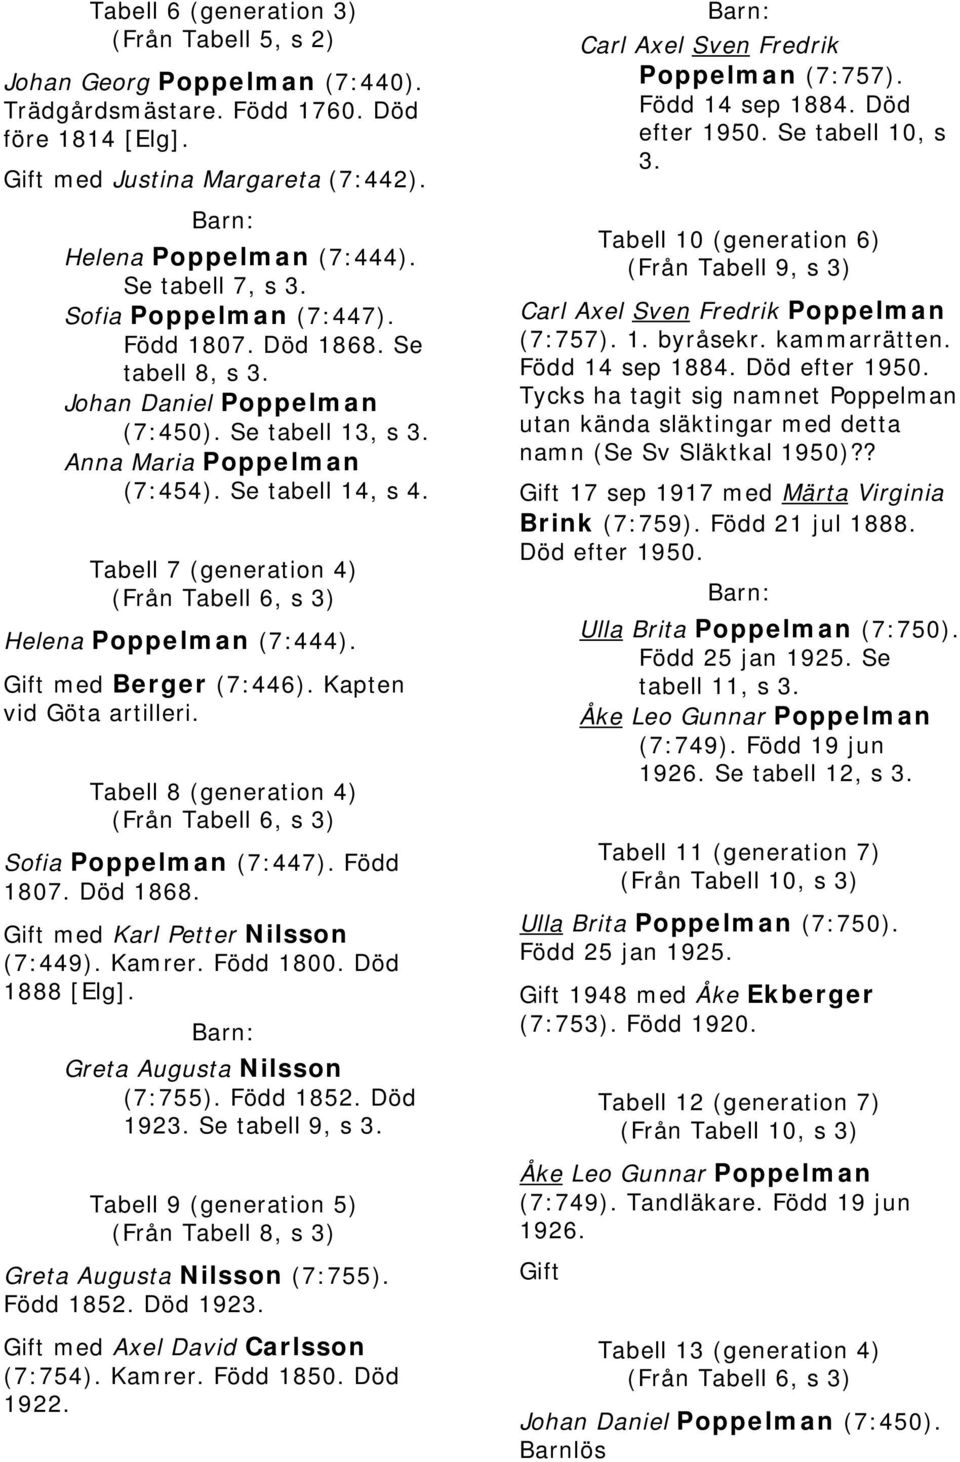 Tabell 7 (generation 4) (Från Tabell 6, s 3) Helena Poppelman (7:444). Gift med Berger (7:446). Kapten vid Göta artilleri. Tabell 8 (generation 4) (Från Tabell 6, s 3) Sofia Poppelman (7:447).